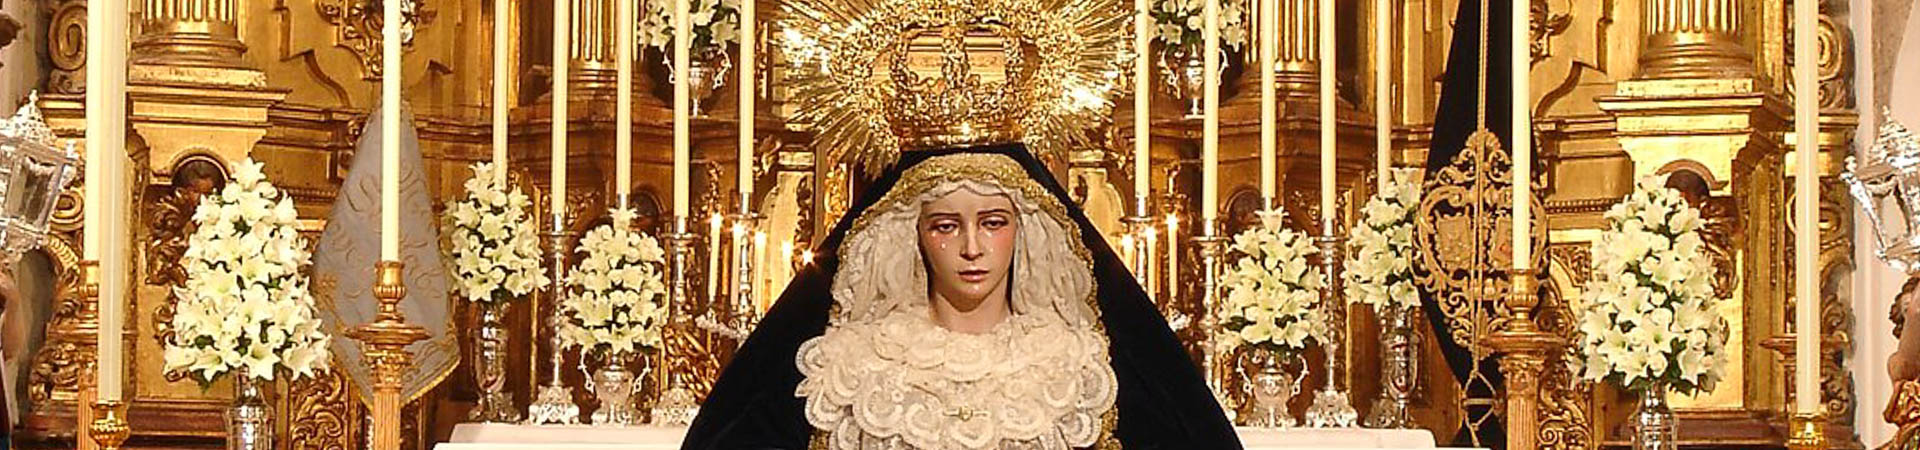 15 Besamanos Virgen 2007 1 2 cabecera